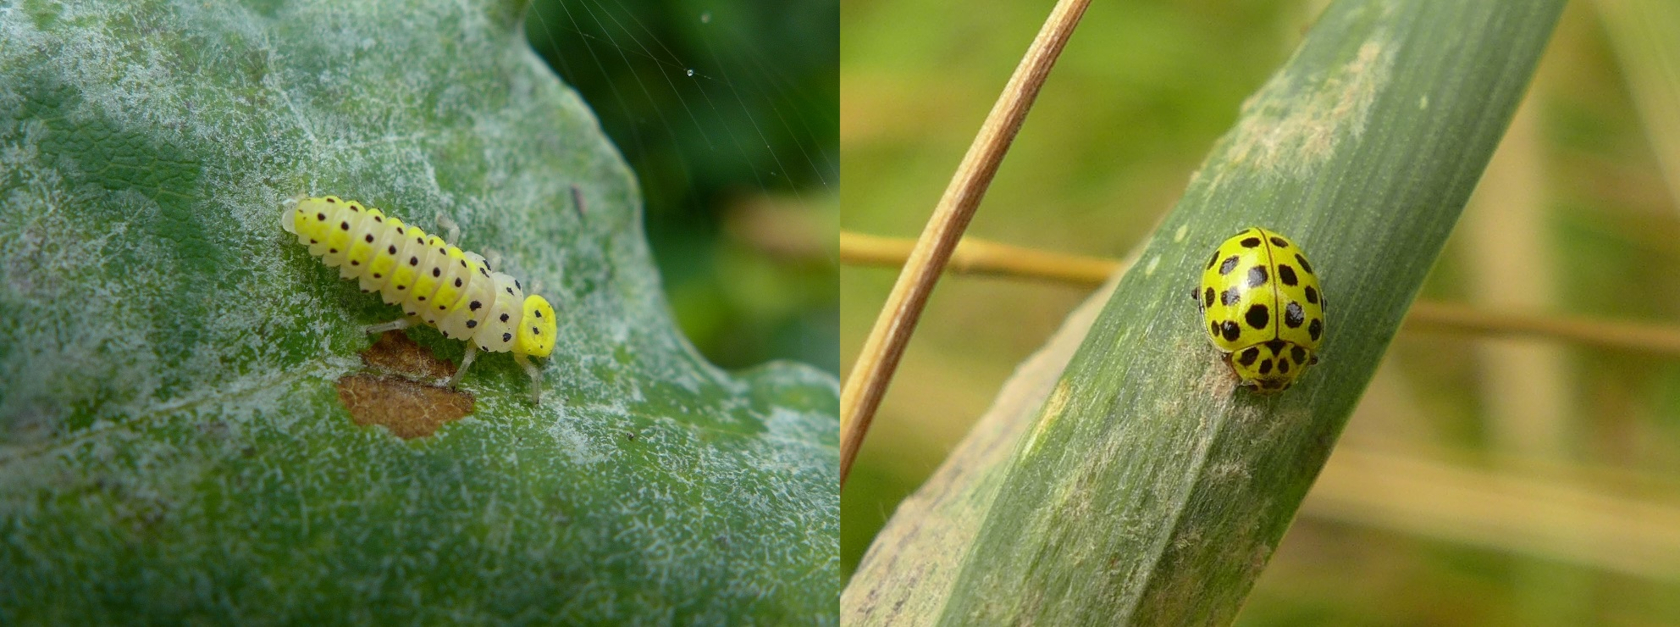 Bestimmte Marienkäferarten sind auf Echte Mehltaupilze (Erysiphaceae) als Nahrung spezialisiert. Hier der Zweiundzwanzigpunkt-Marienkäfer Psyllobora vigintiduopunctata (Larve links, Imago rechts) beim Abweiden des Myzels. Foto: Julia Kruse